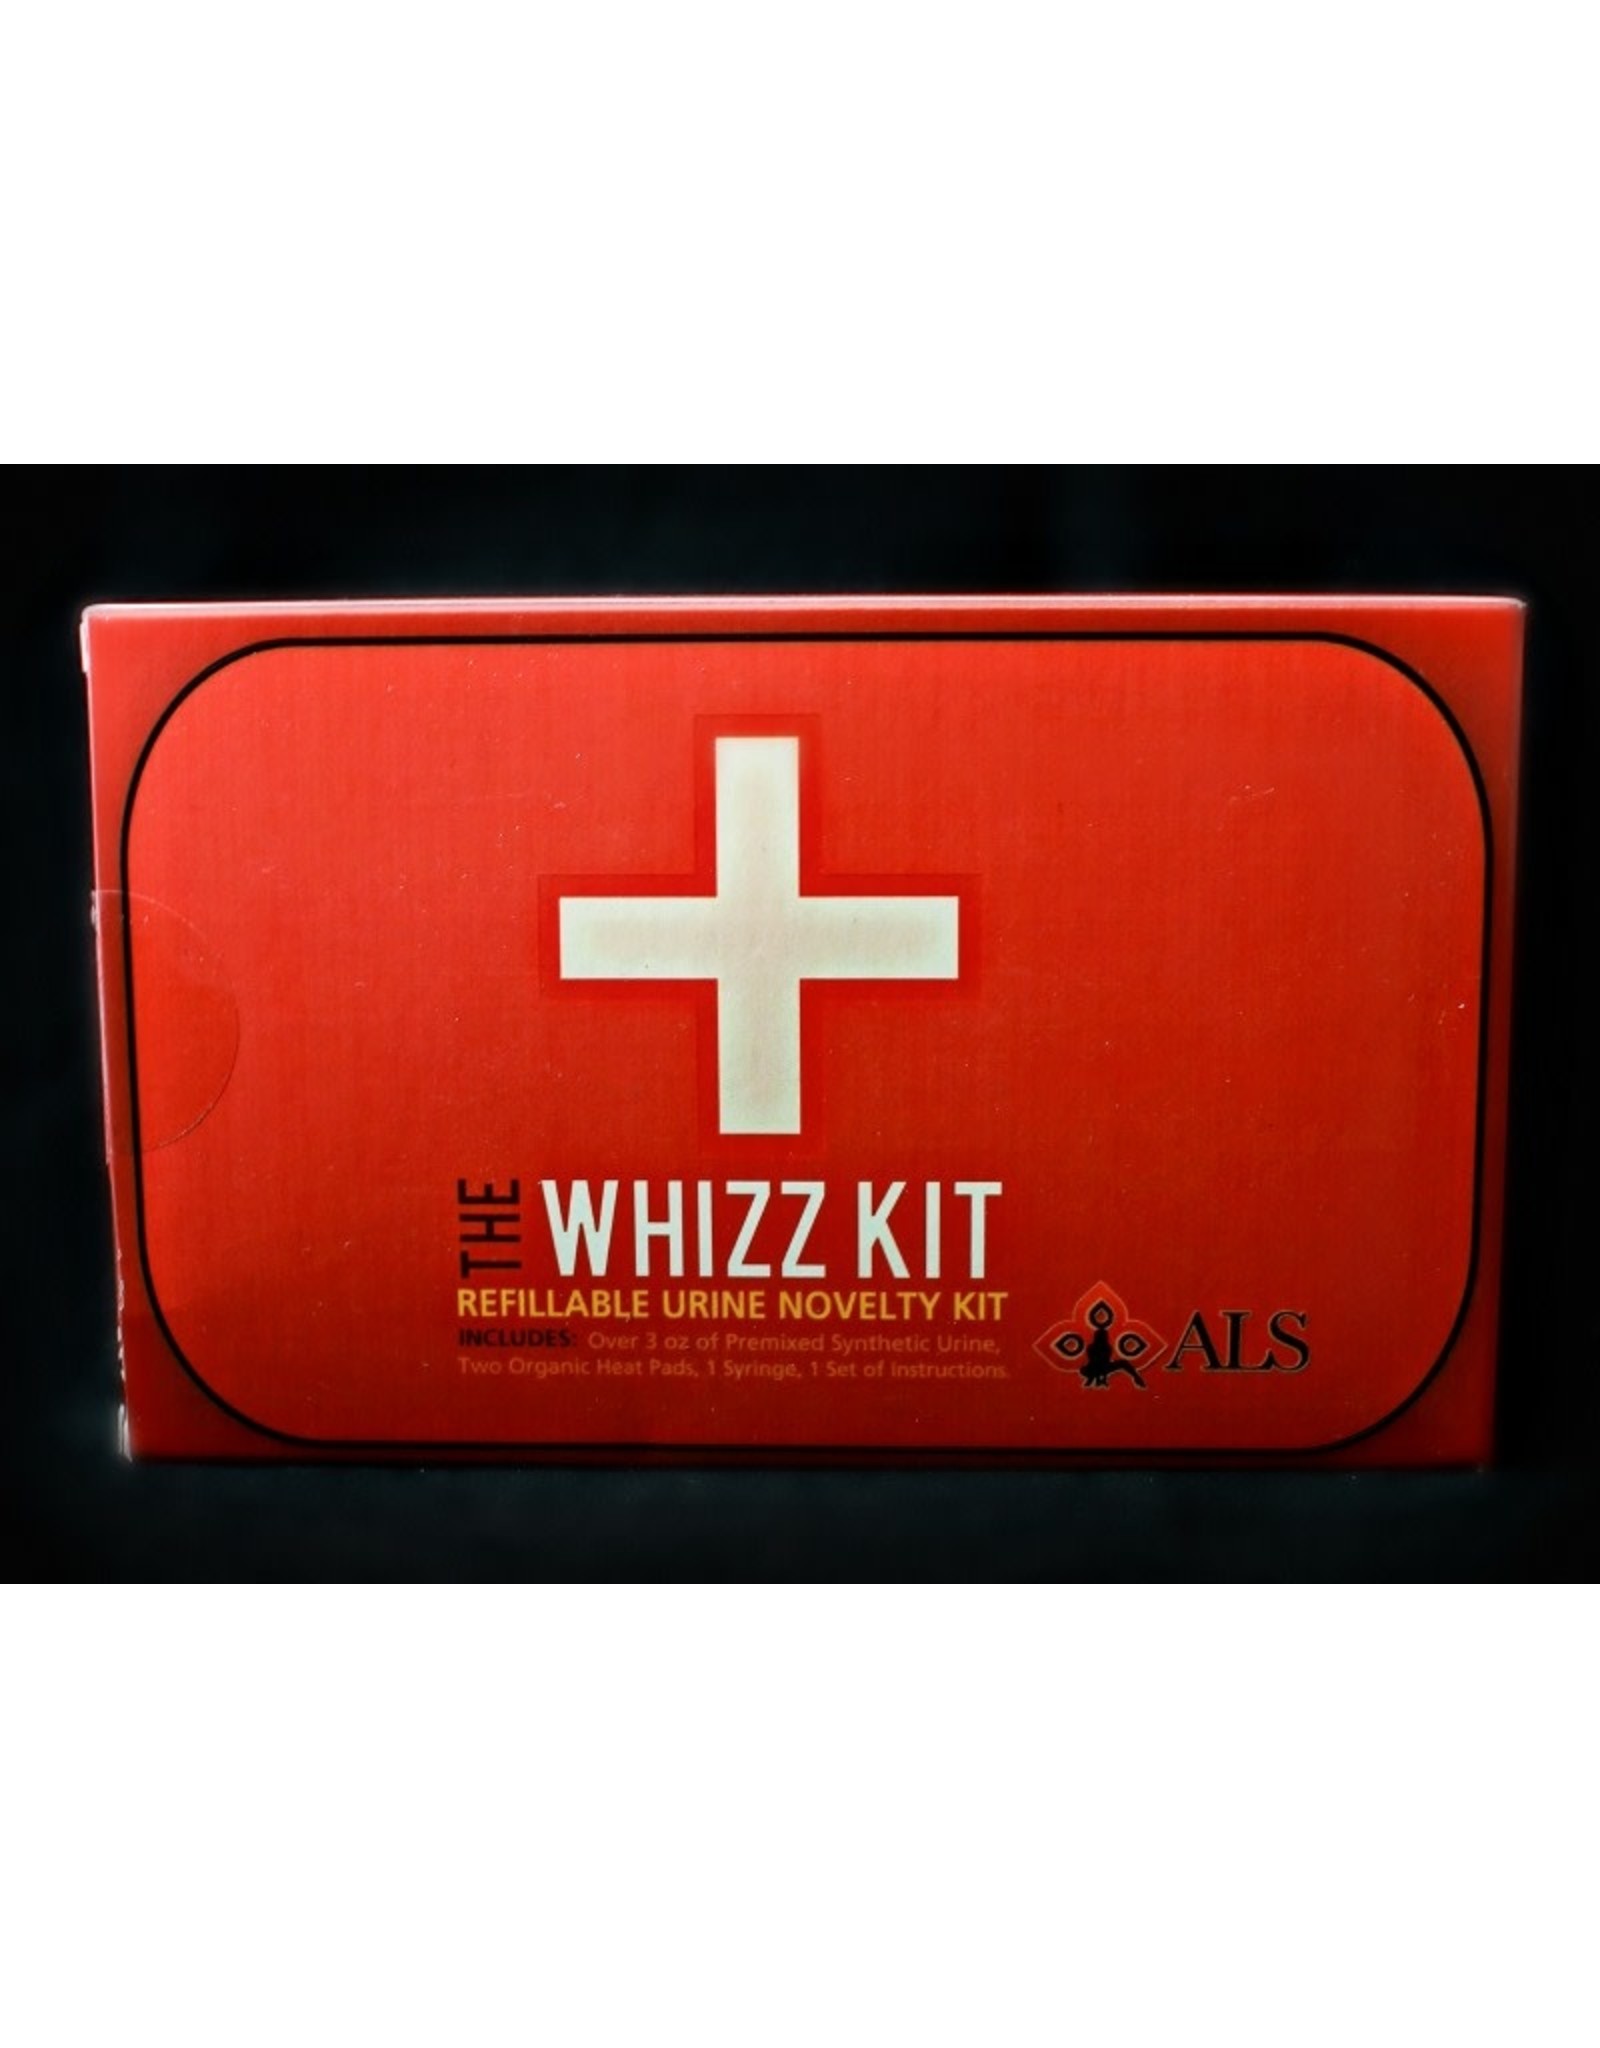 The Whizz Kit